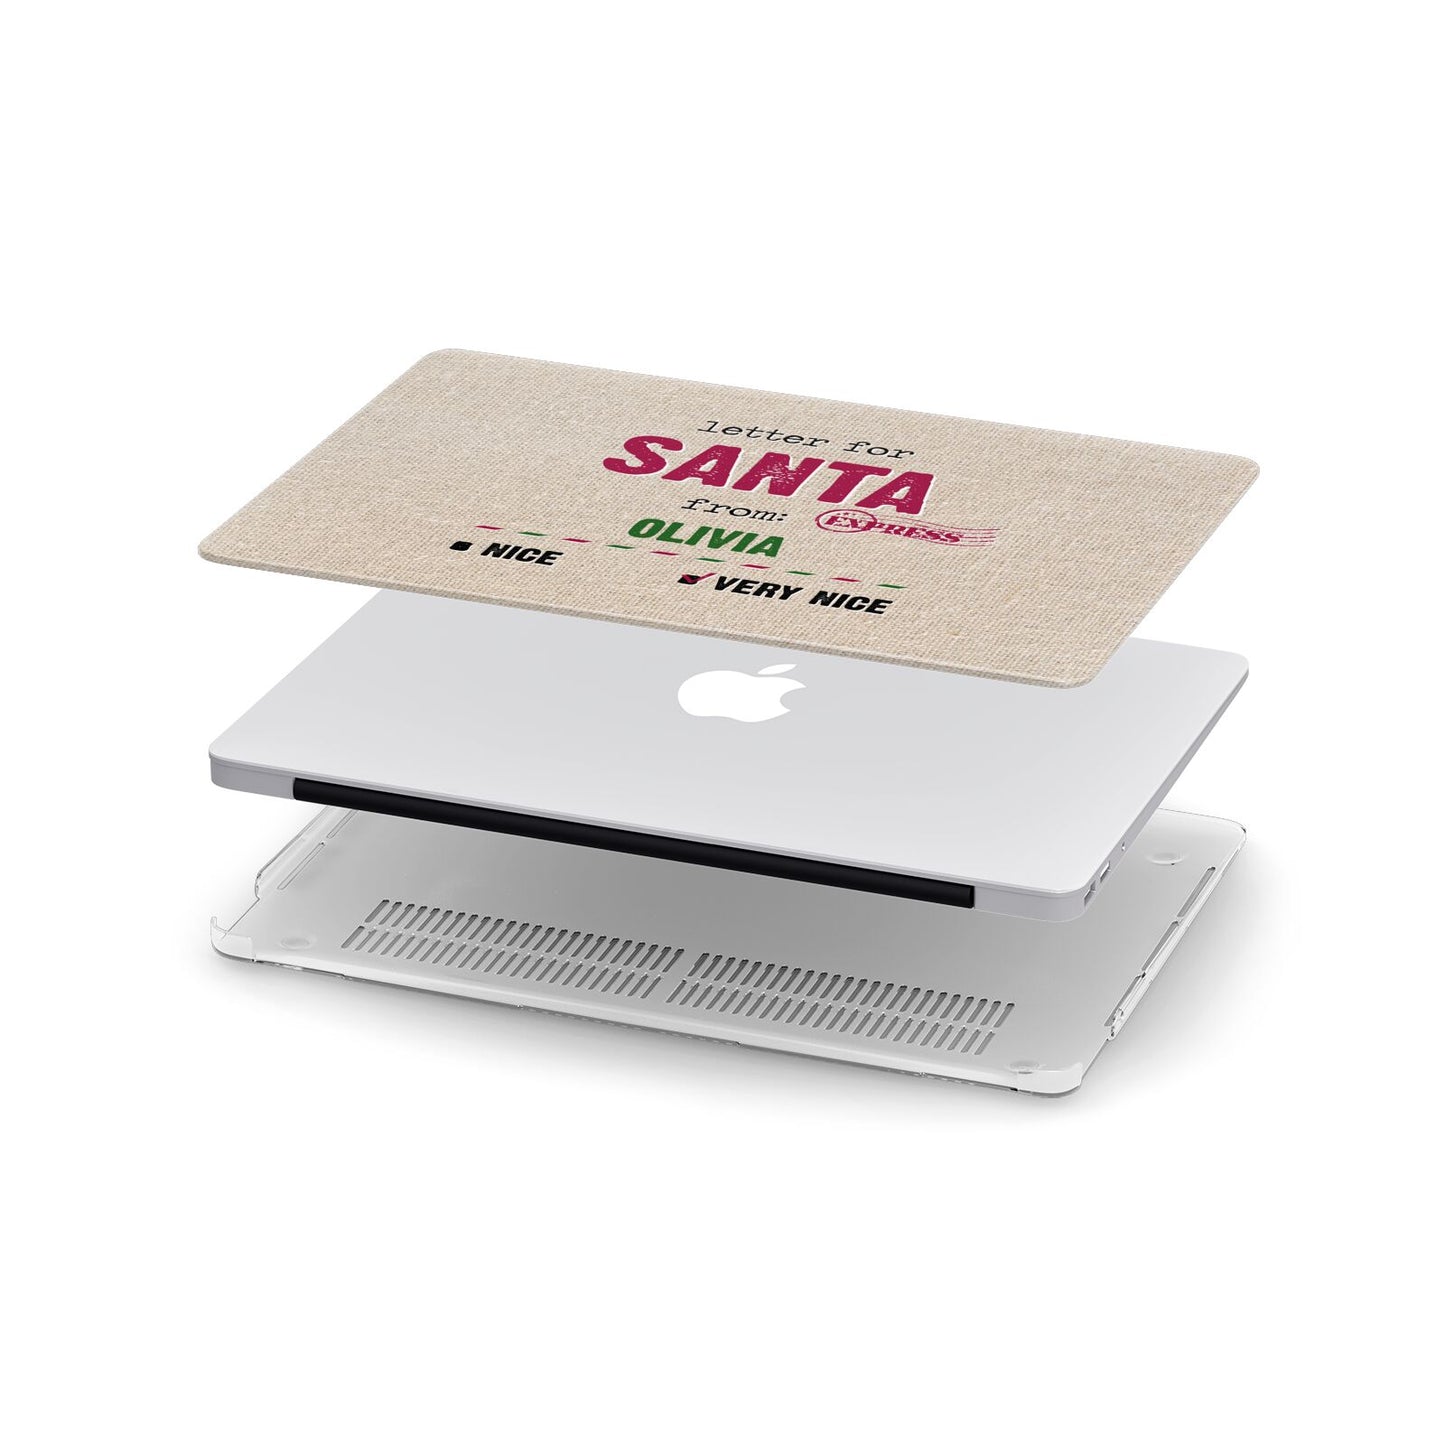 Letters to Santa Personalised Apple MacBook Case in Detail